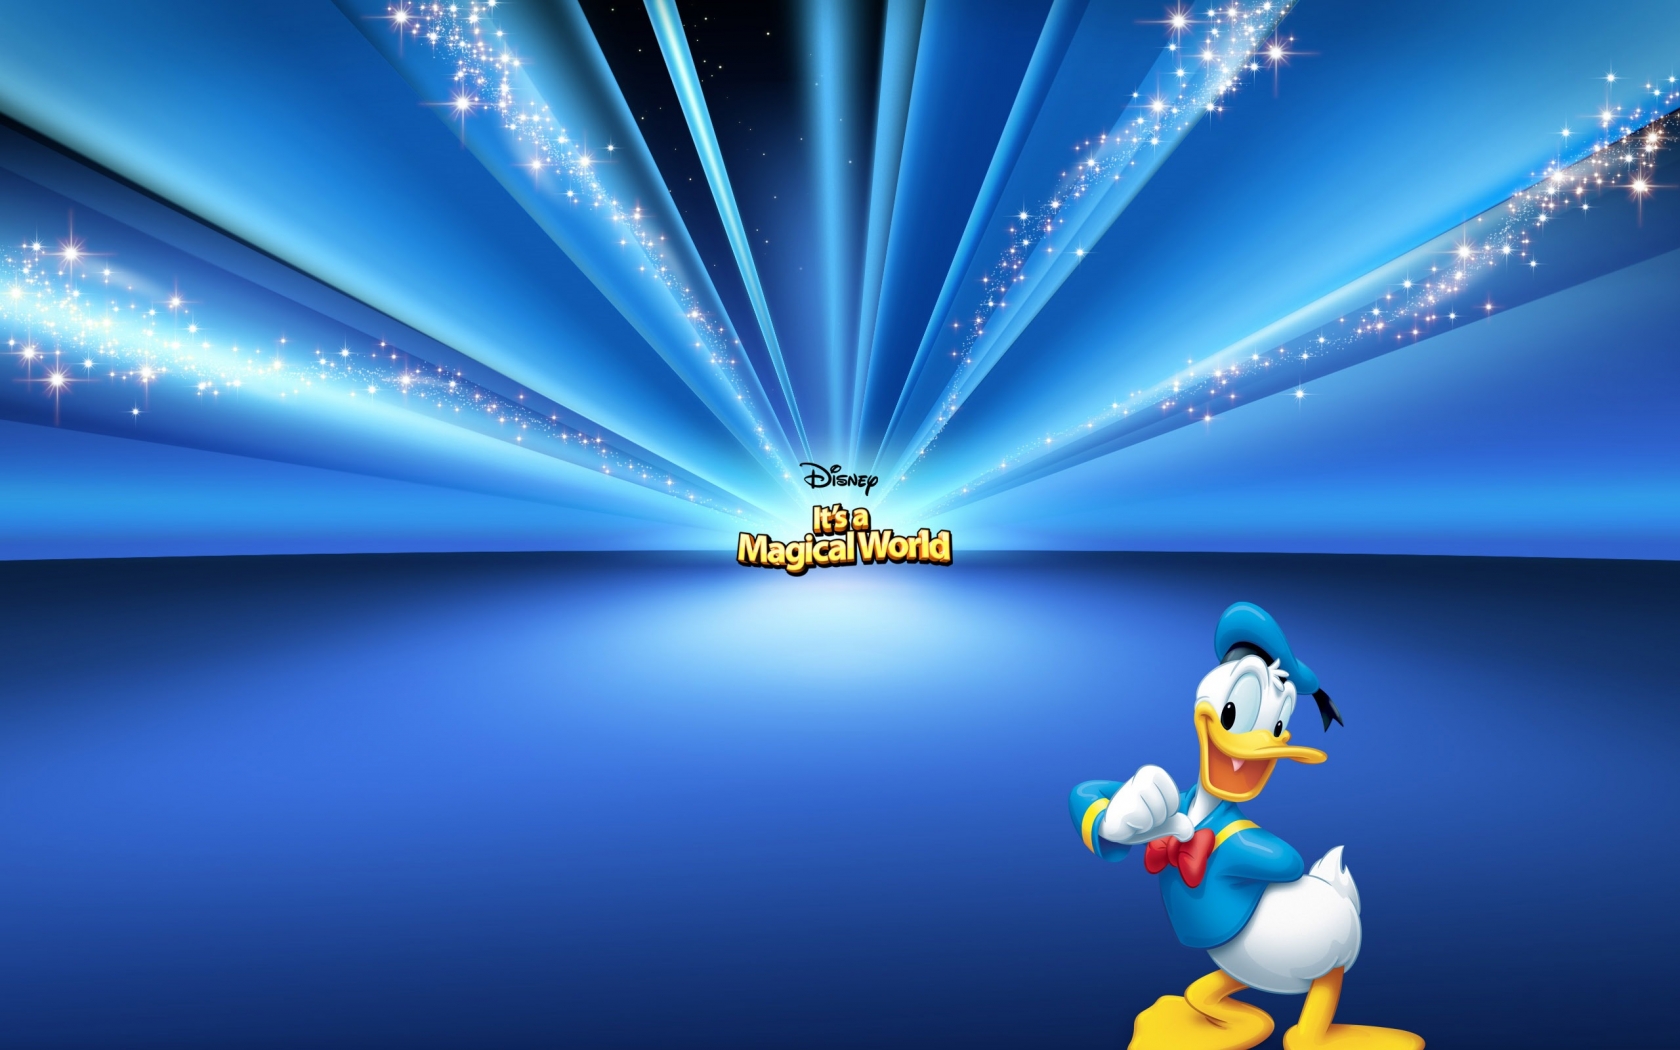 Donald Duck Cartoon for 1680 x 1050 widescreen resolution